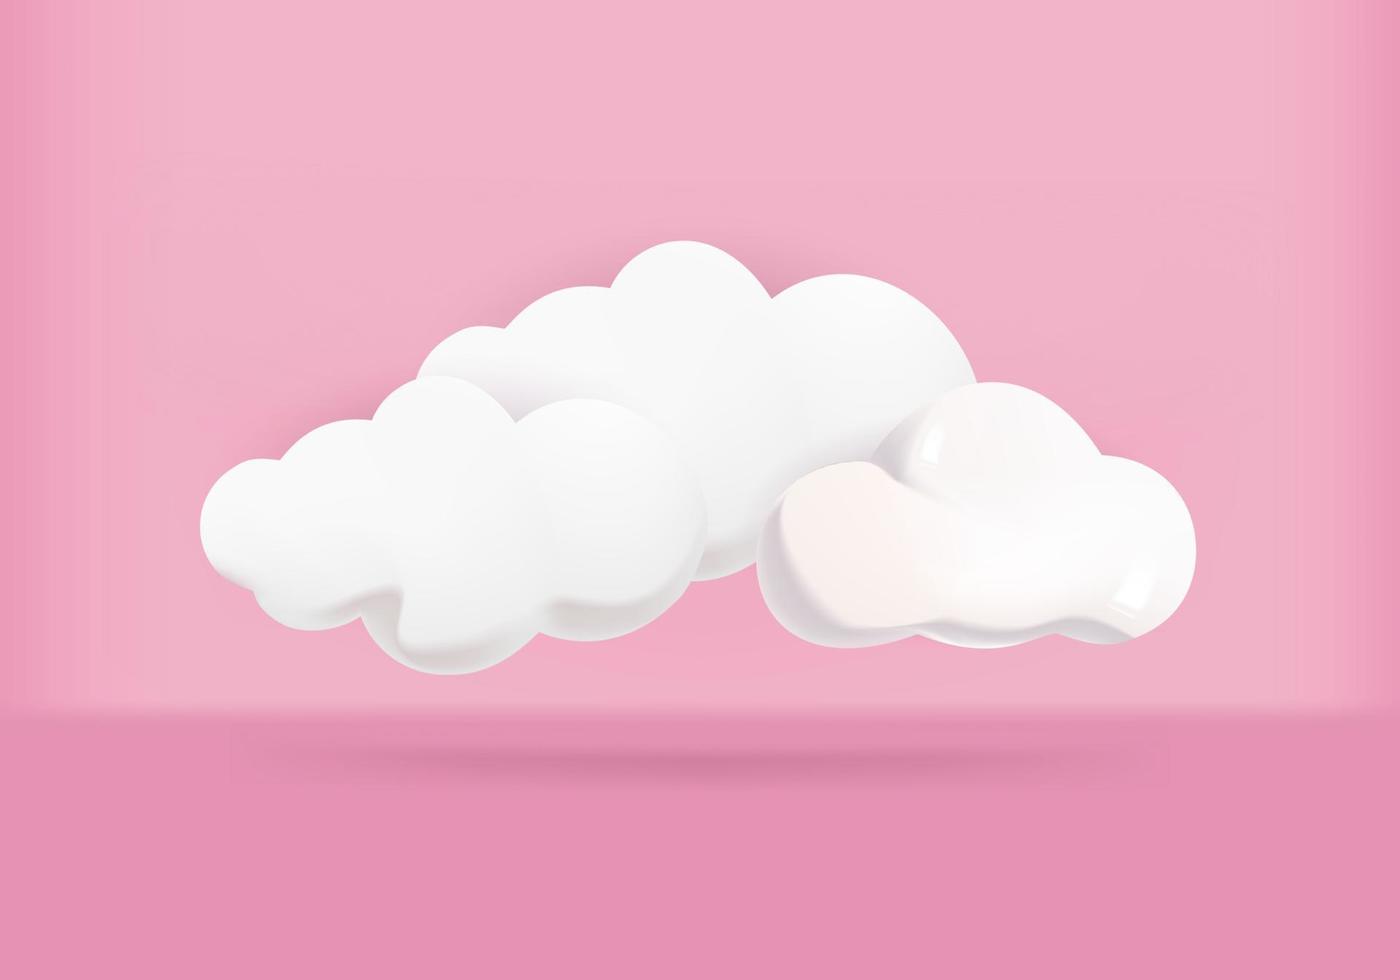 ilustrações vetoriais de nuvens 3d com fundo rosa vetor